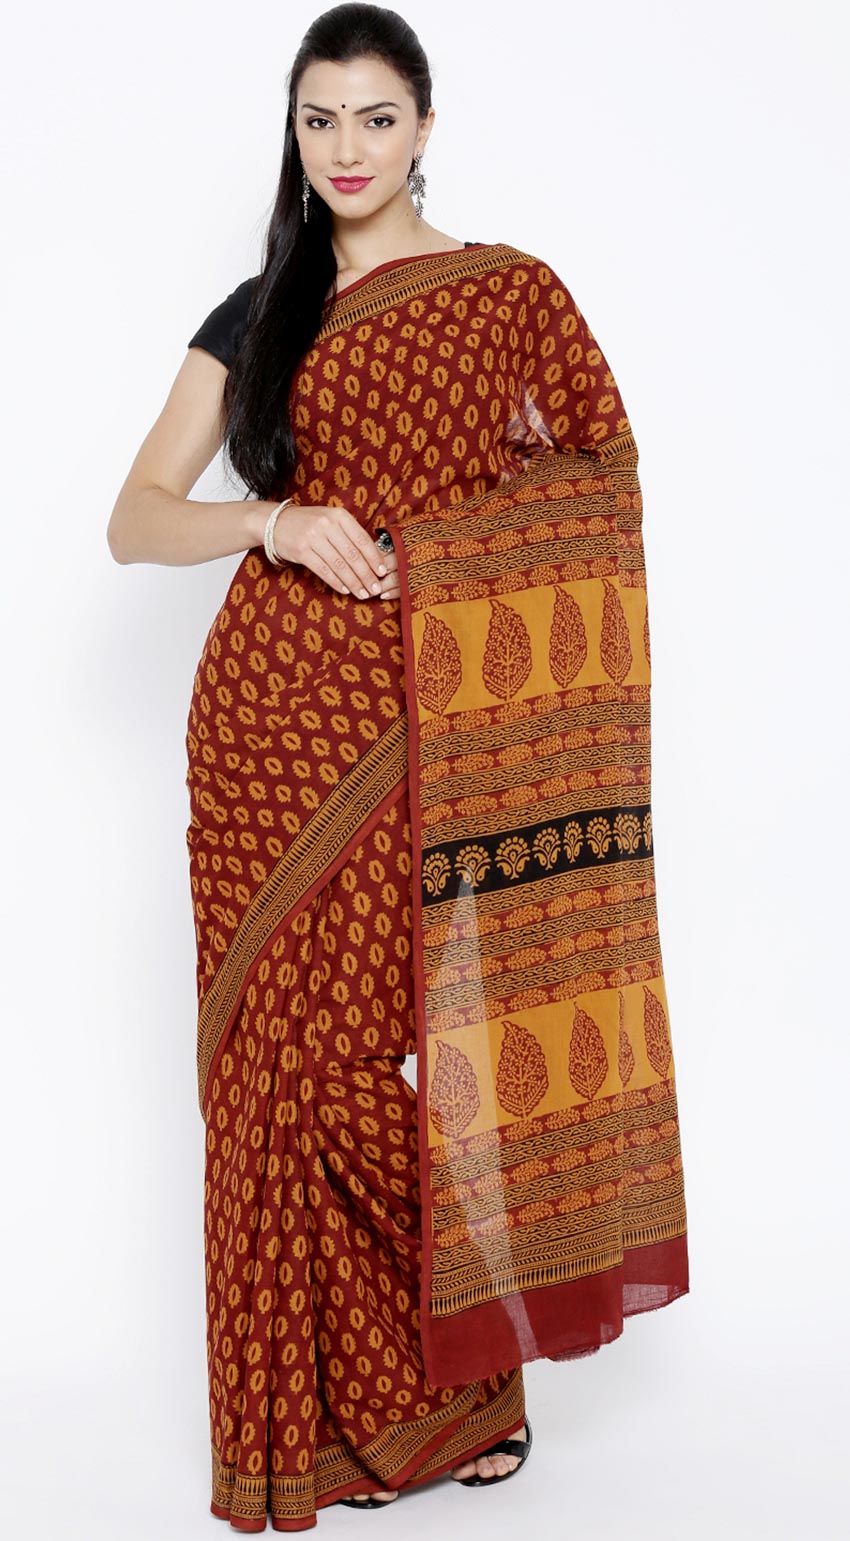 10 kiểu in đặc sắc trên vải Ấn Độ-2a